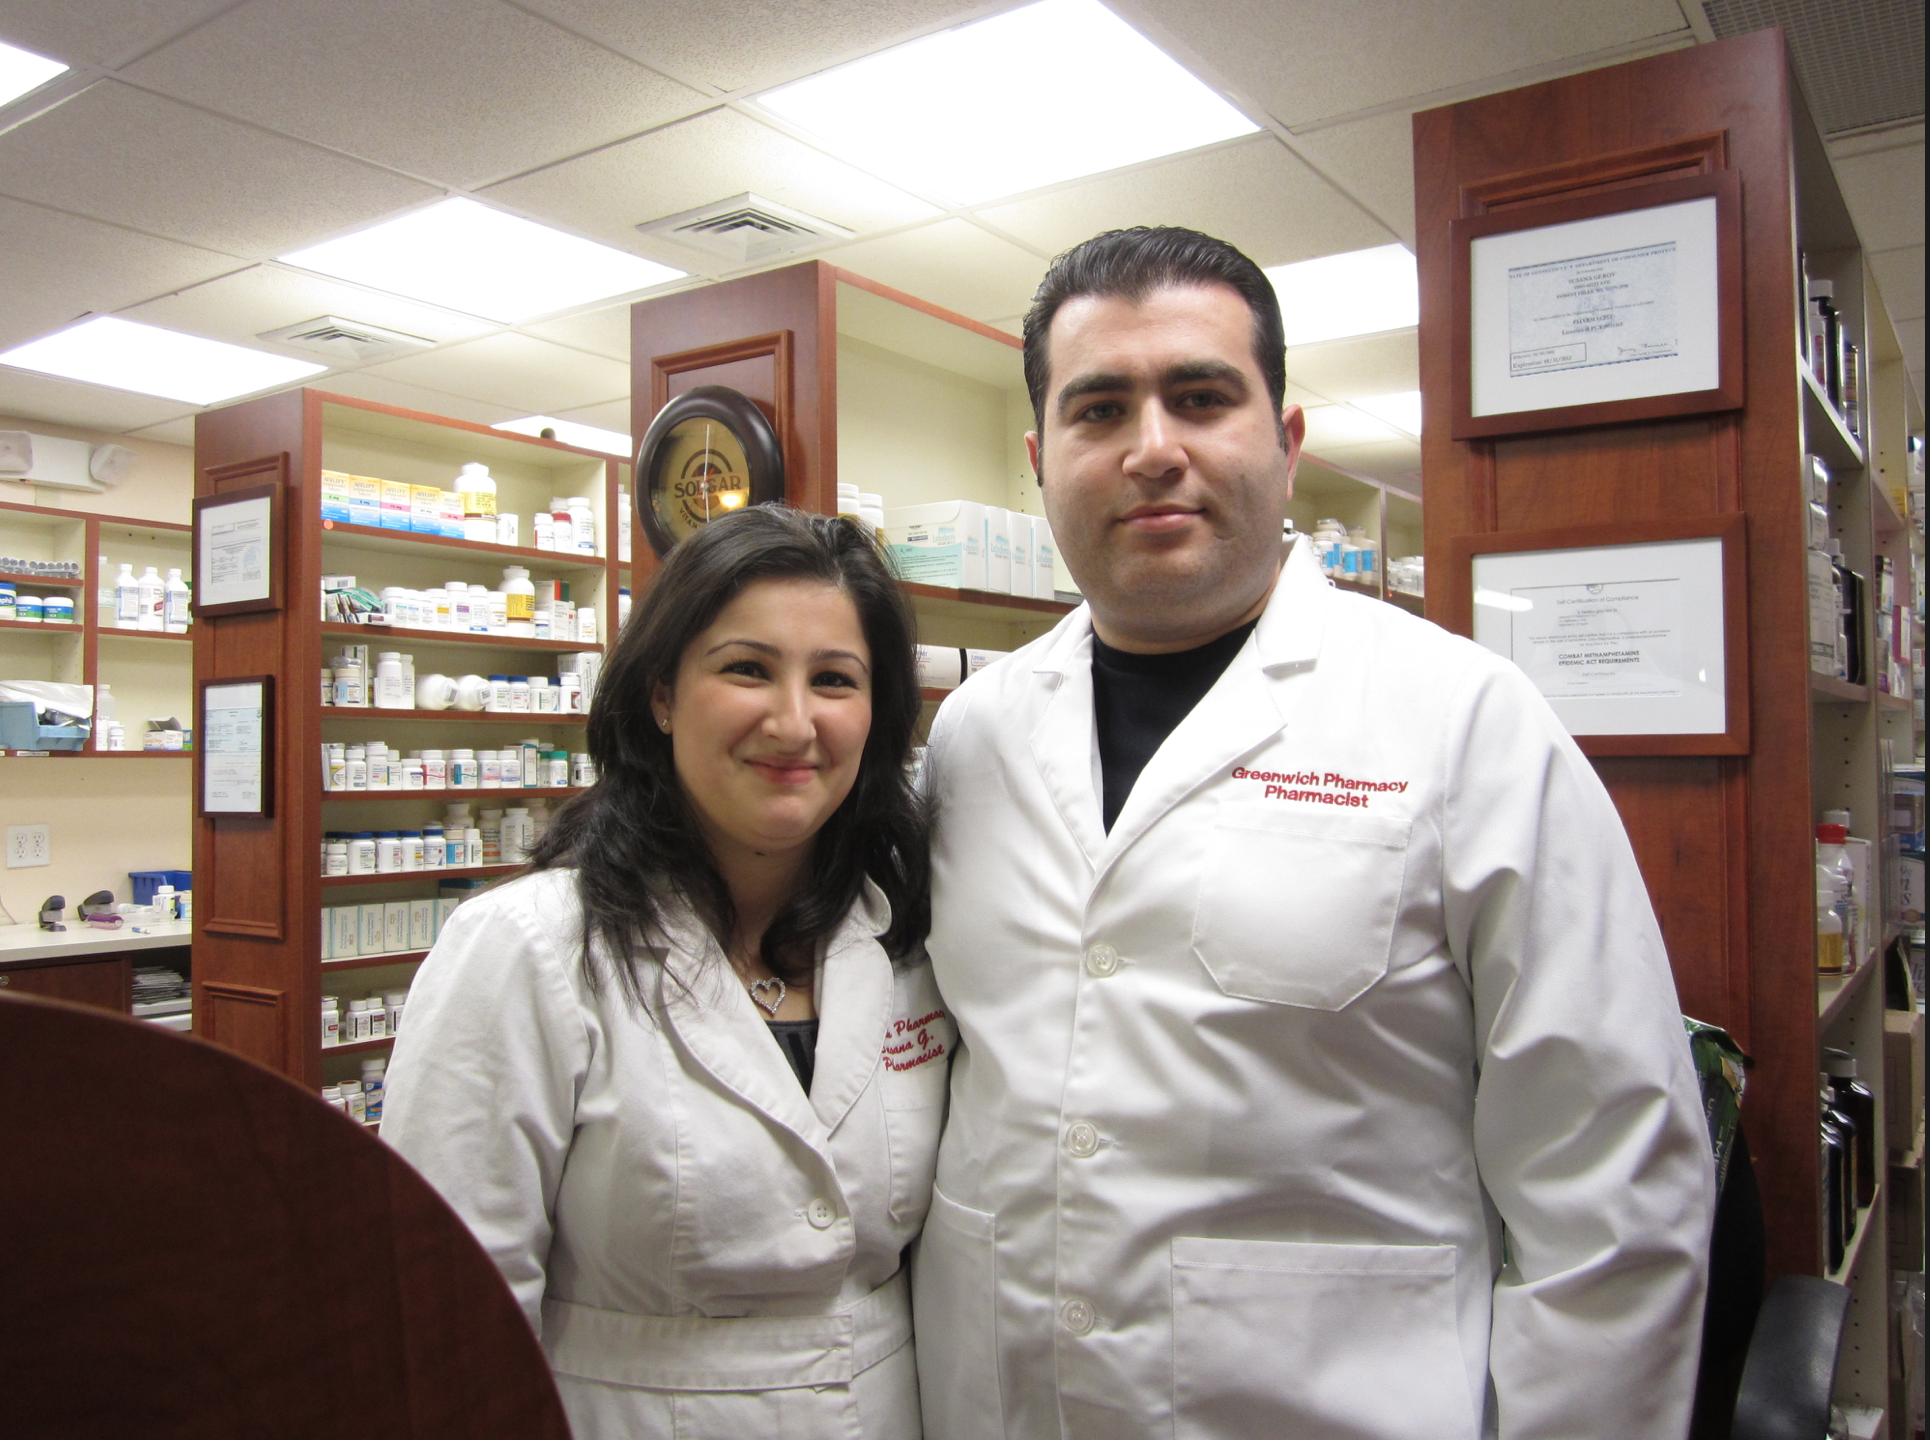 Susana and Dmitri Daniarov, owners of Greenwich Pharmacy